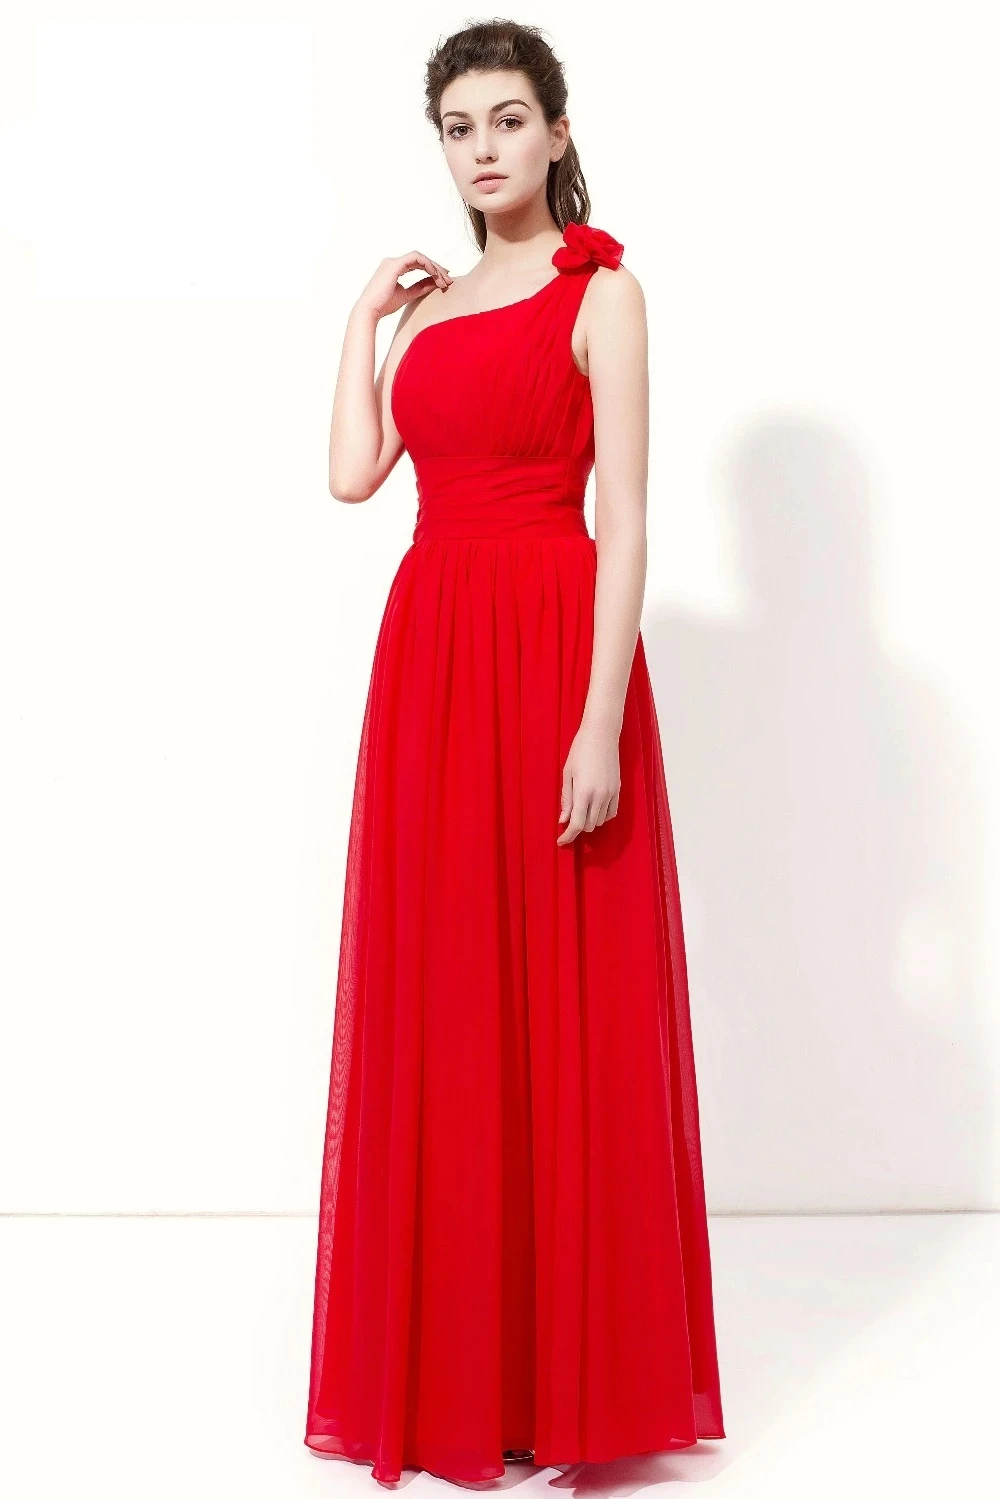 ANGELSBRIDEP Красные платья подружек невесты, Длинное вечернее платье Madrinha, Шифоновое Платье ручной работы с цветком на одно плечо, свадебные платья для гостей, вечерние платья